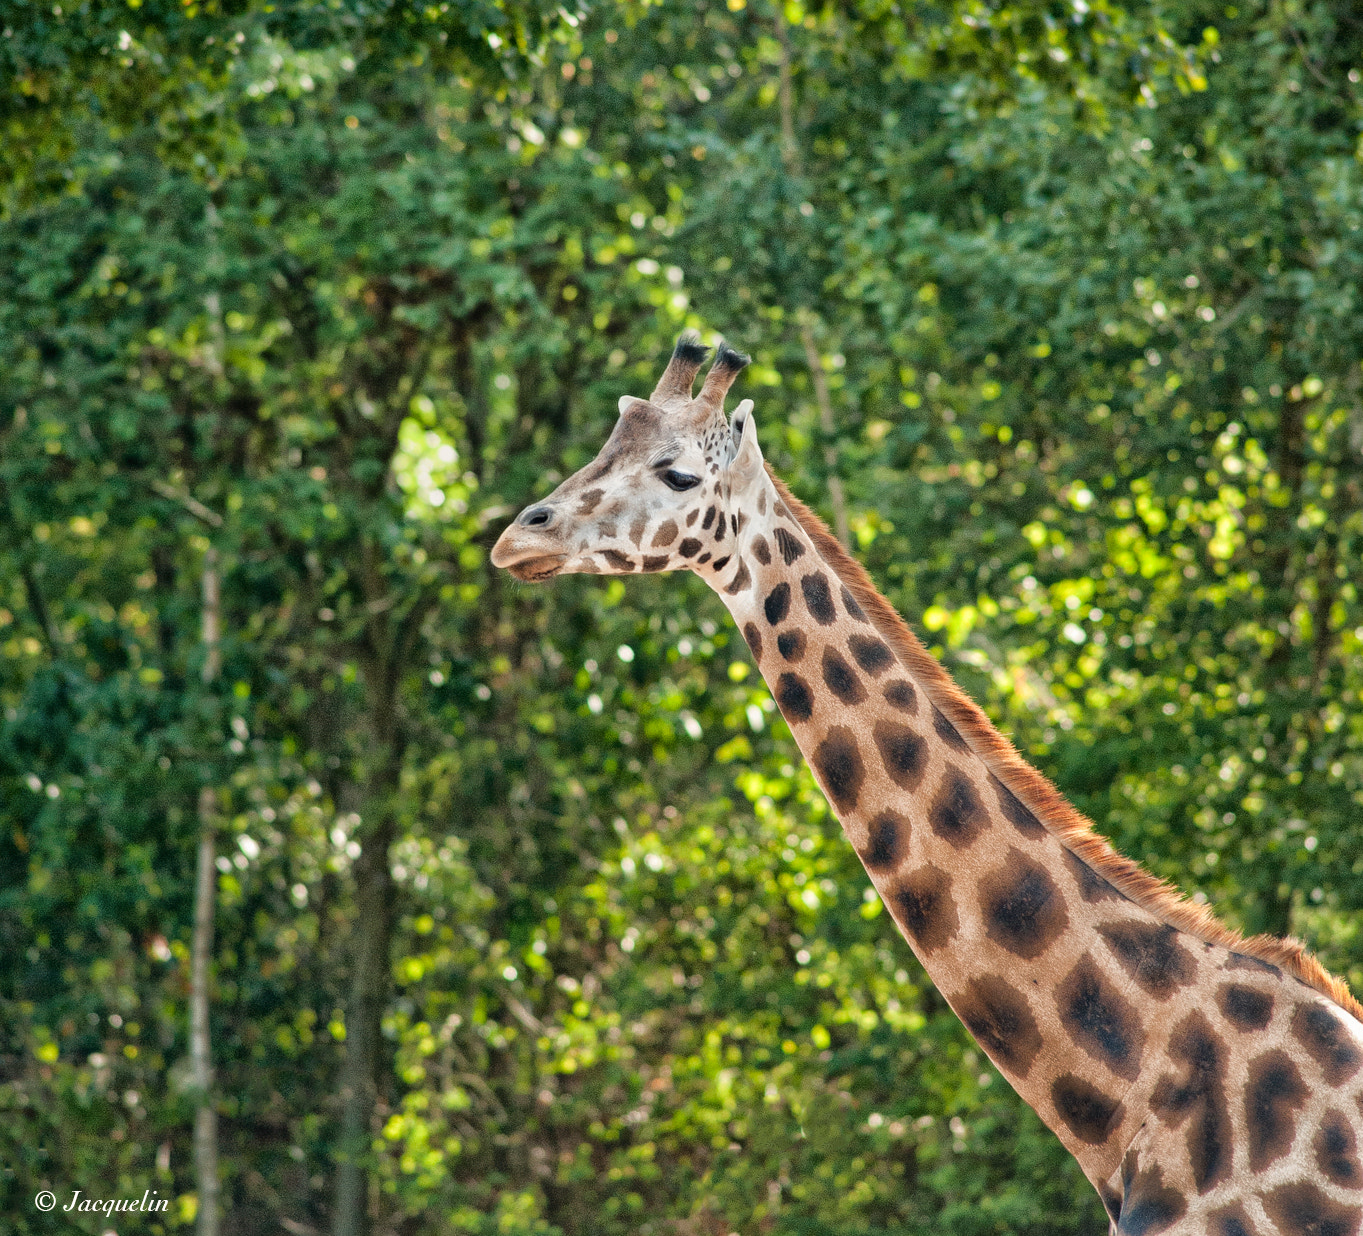 Nikon D3 sample photo. Giraffe photography